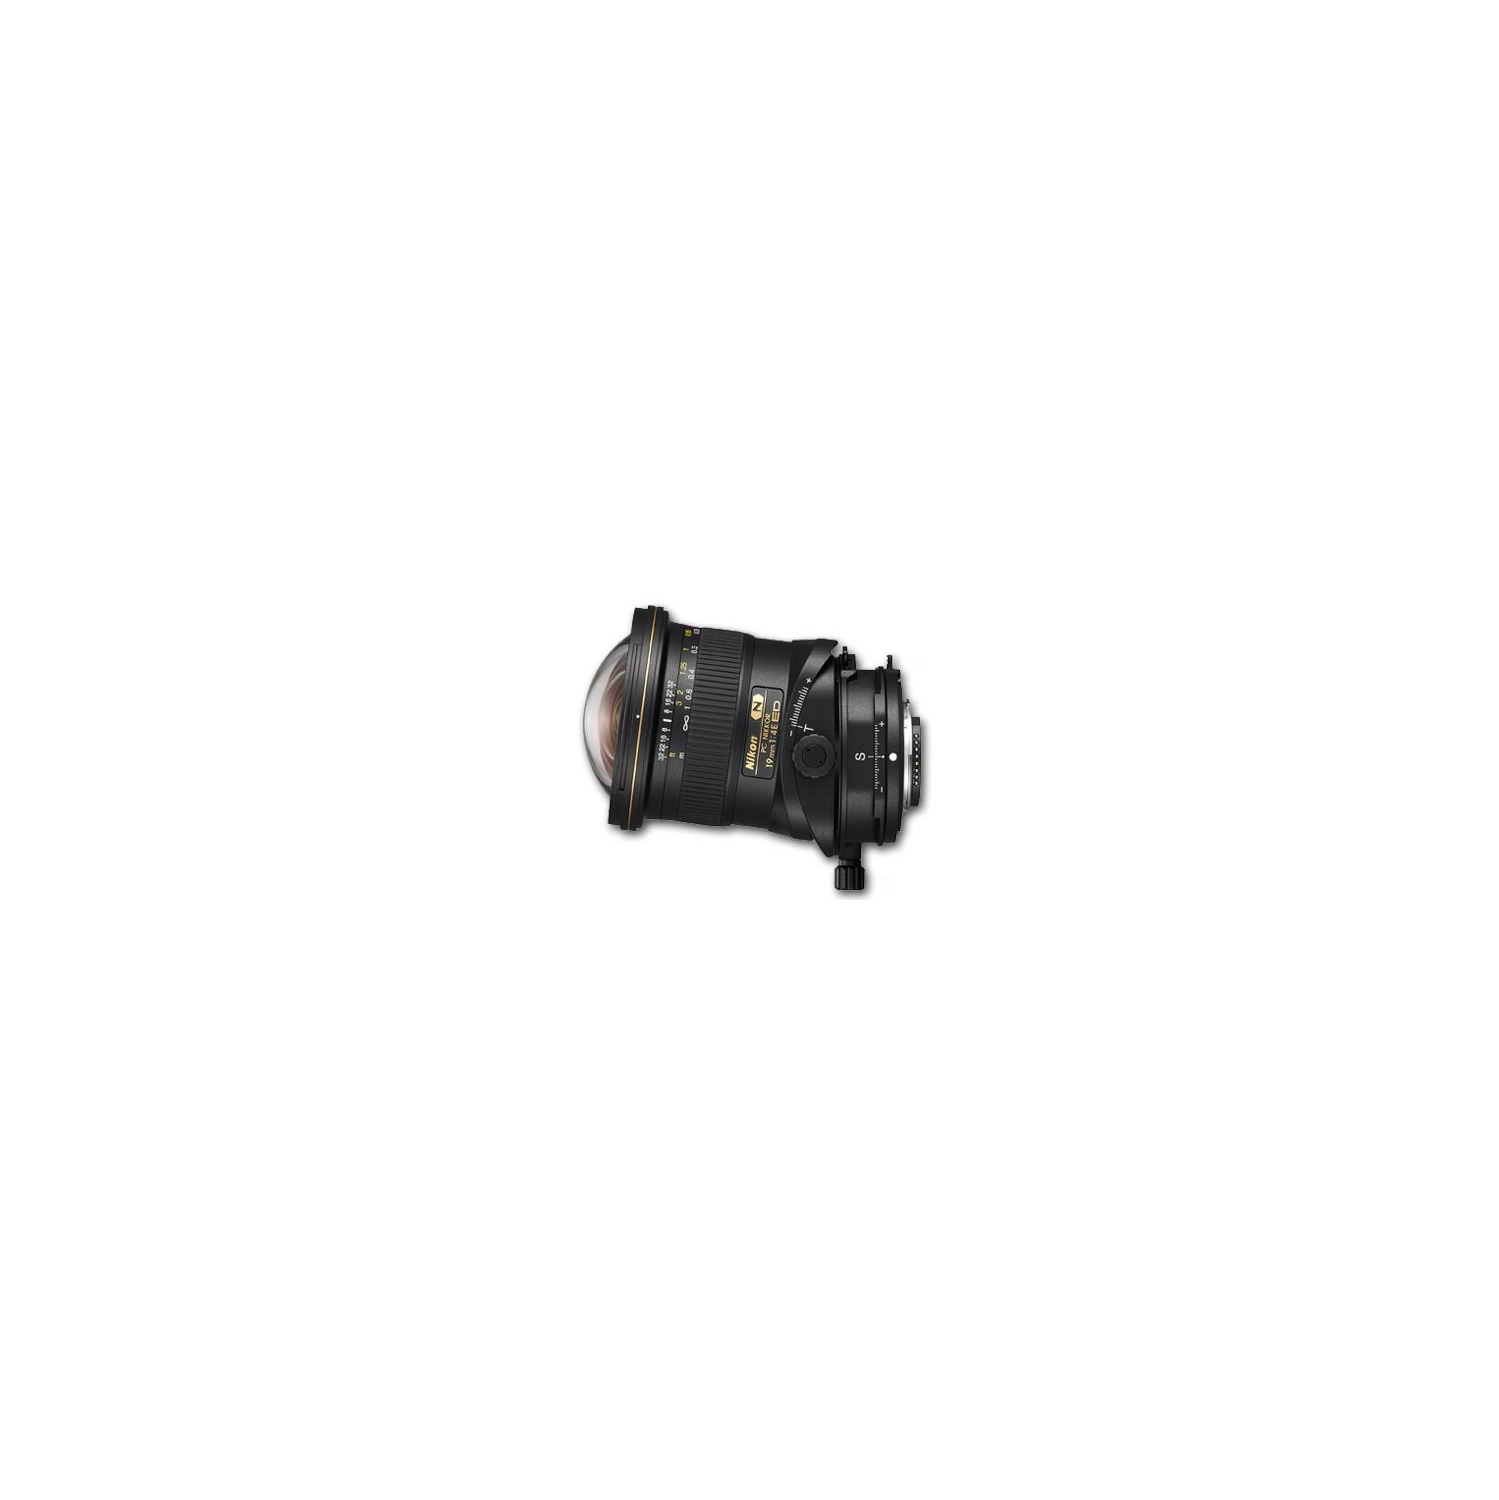 Nikon 19mm f4 E ED PC-E Tilt-Shift Lens